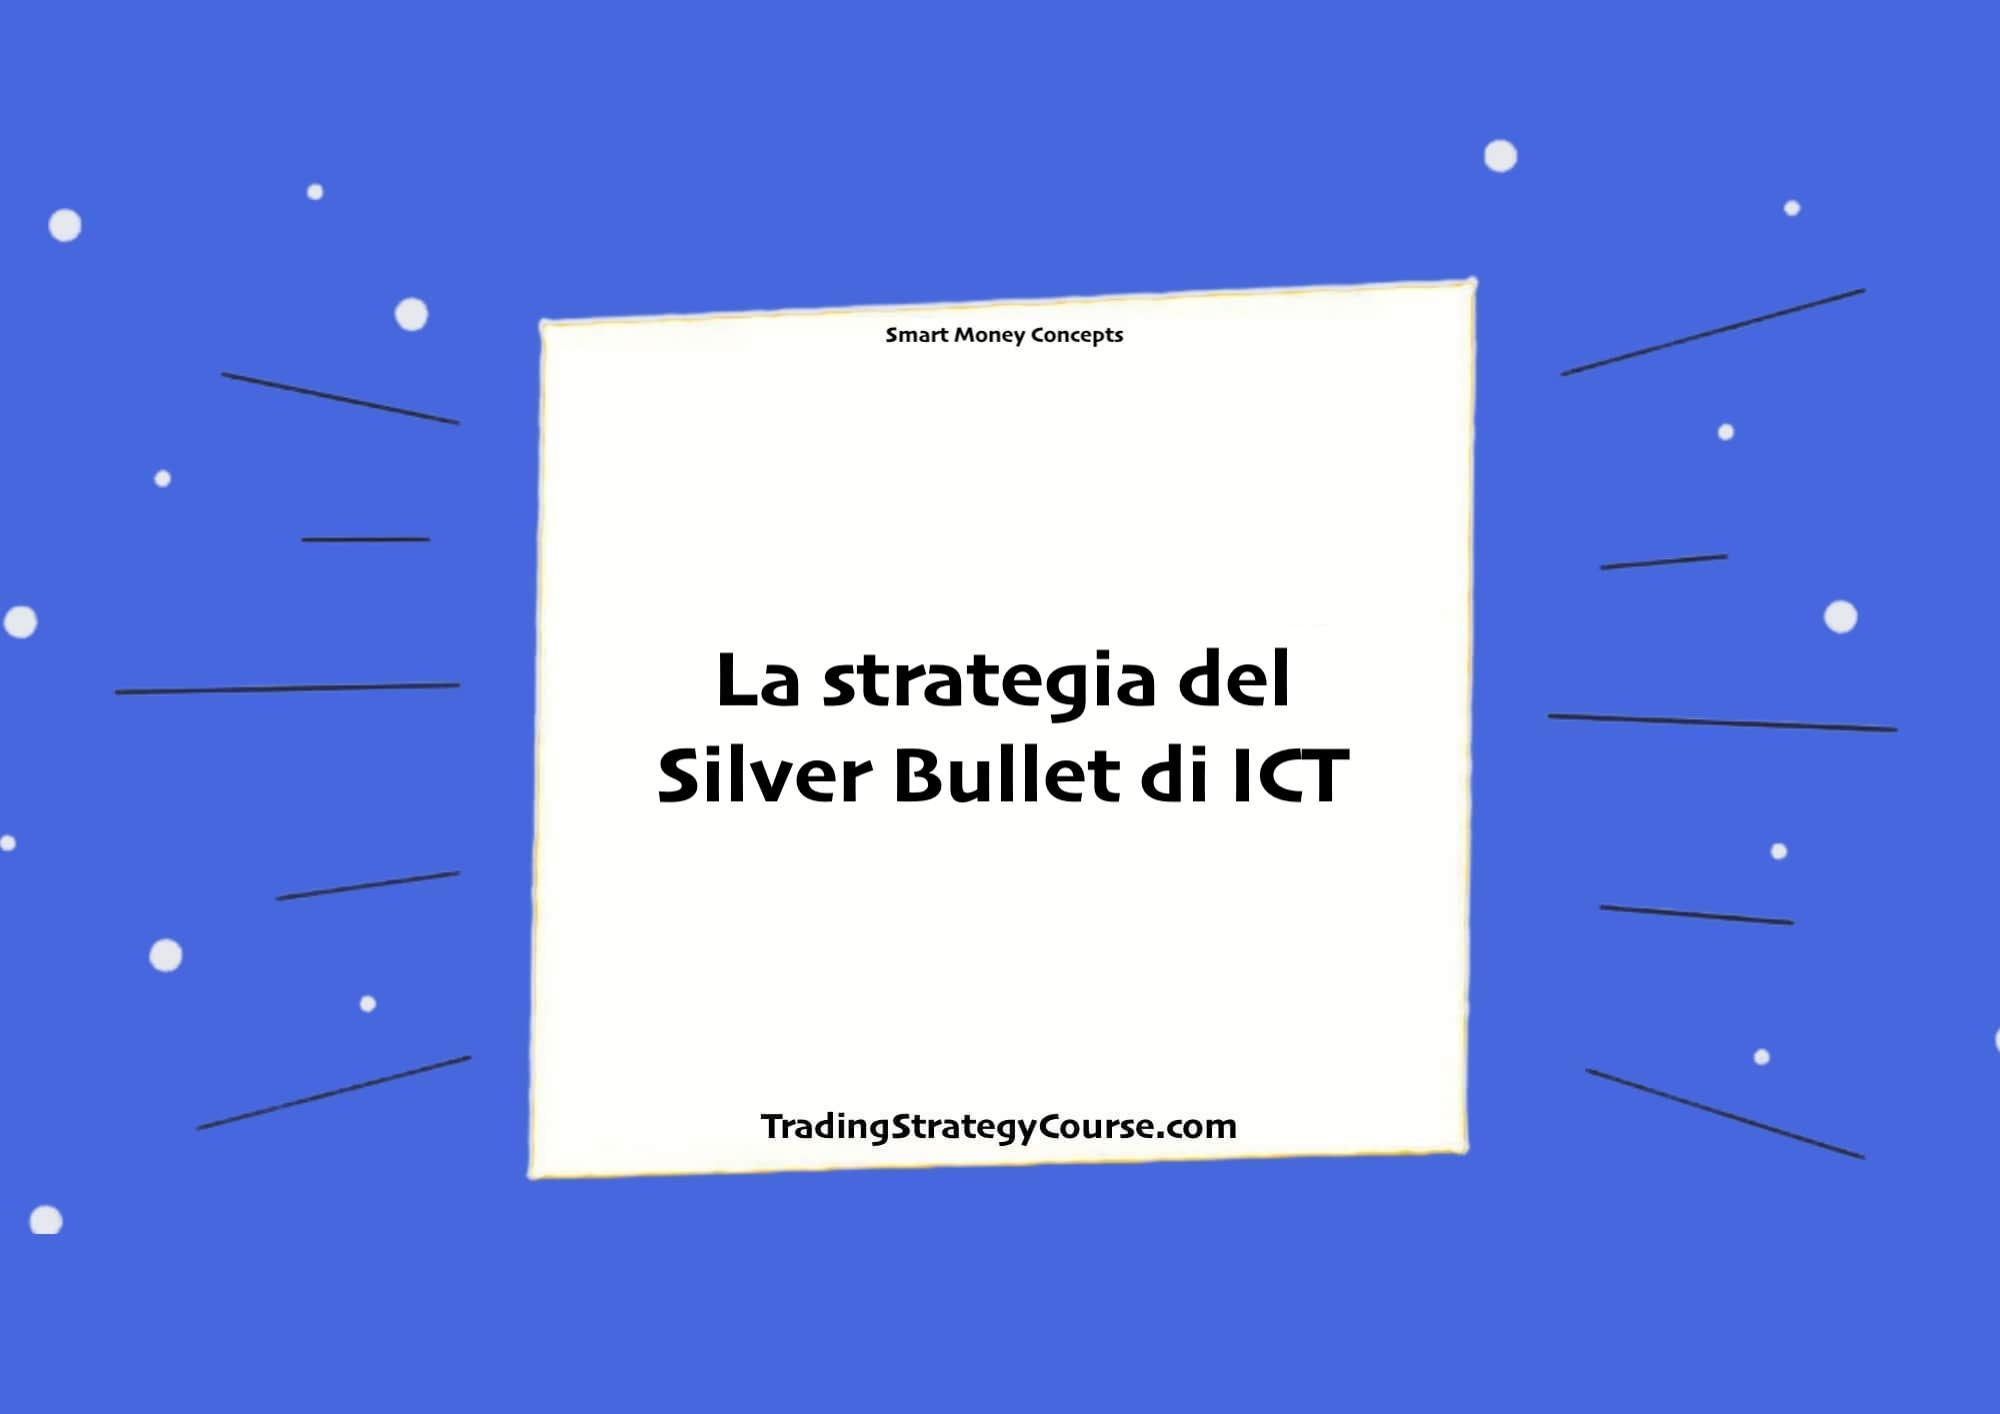 La strategia del Silver Bullet di ICT